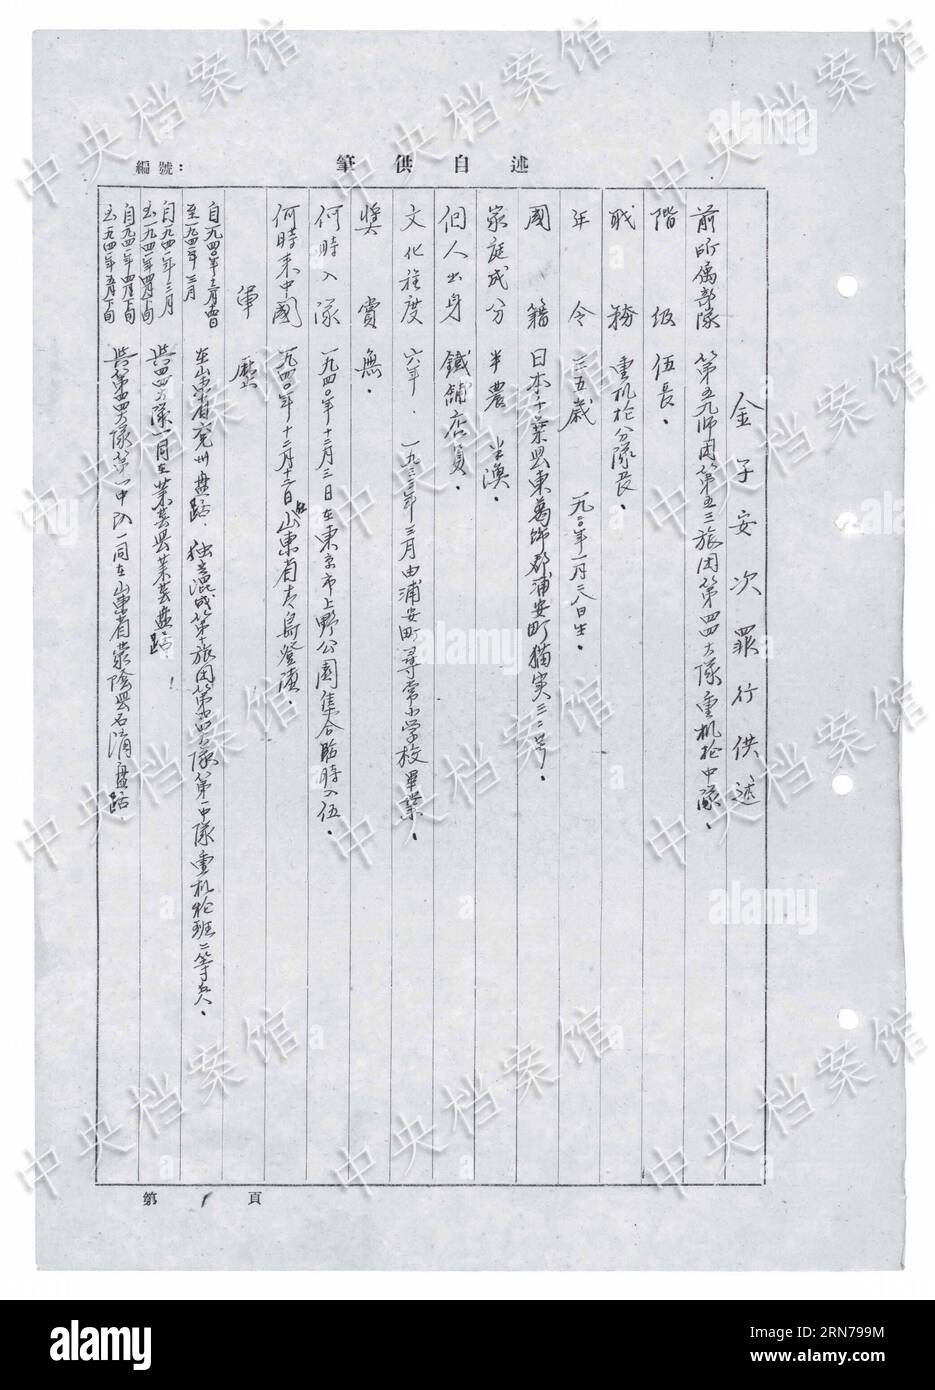 (150827) -- PEKING, 27. August 2015 () -- Foto veröffentlicht am 27. August 2015 von der Staatsarchivverwaltung Chinas auf seiner Website zeigt die chinesische Version eines Ausschnitts aus dem handschriftlichen Geständnis des japanischen Kriegsverbrechers Yasuji Kaneko. Das siebzehnte in einer Reihe von 31 handschriftlichen Geständnissen japanischer Kriegsverbrecher, die online veröffentlicht wurden, zeigt Yasuji Kaneko, der 1920 geboren wurde. Er trat 1940 dem japanischen Angriffskrieg gegen China bei und wurde im August 1945 gefangen genommen. Kaneko und seine Gefährten verhafteten zwei chinesische Bauern im Laiwu County der Provinz Shandong, TIE Stockfoto